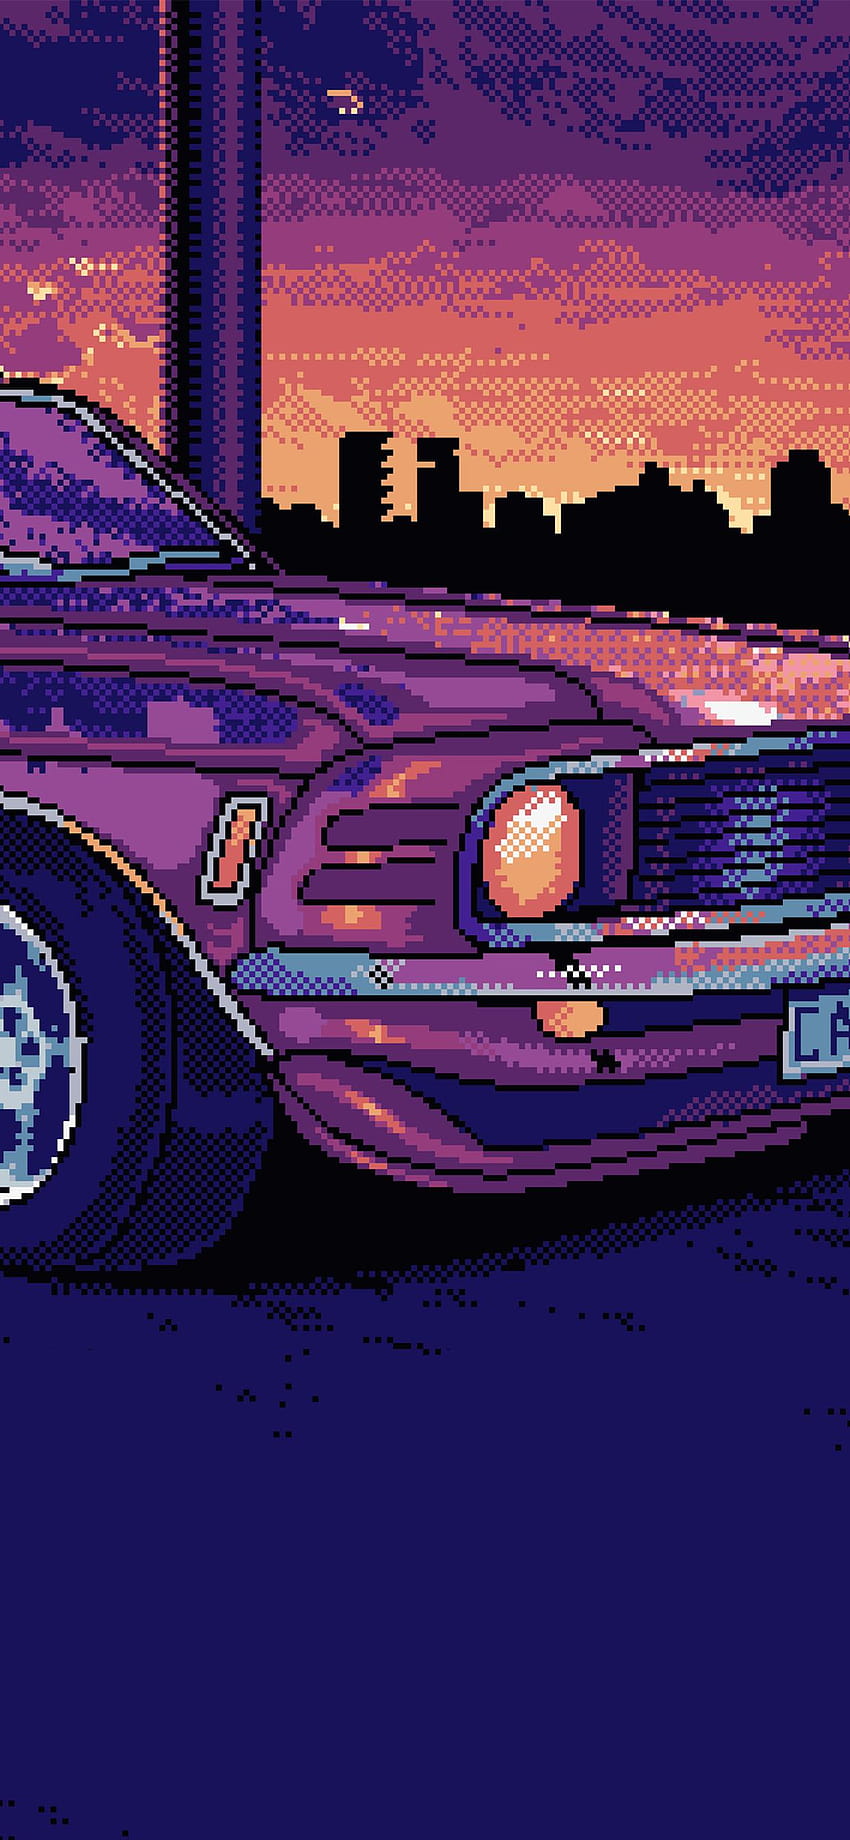 Chiếc Mustang 8 bit sẽ đưa bạn trở lại khoảng thời gian của các trò chơi điện tử cổ điển. Với hình ảnh đầy sự khả năng màu sắc khá độc đáo, chiếc xe này sẽ khiến bạn nhớ lại những ngày thơ ấu của mình trong khi vẫn đầy hiện đại và tươi mới. 